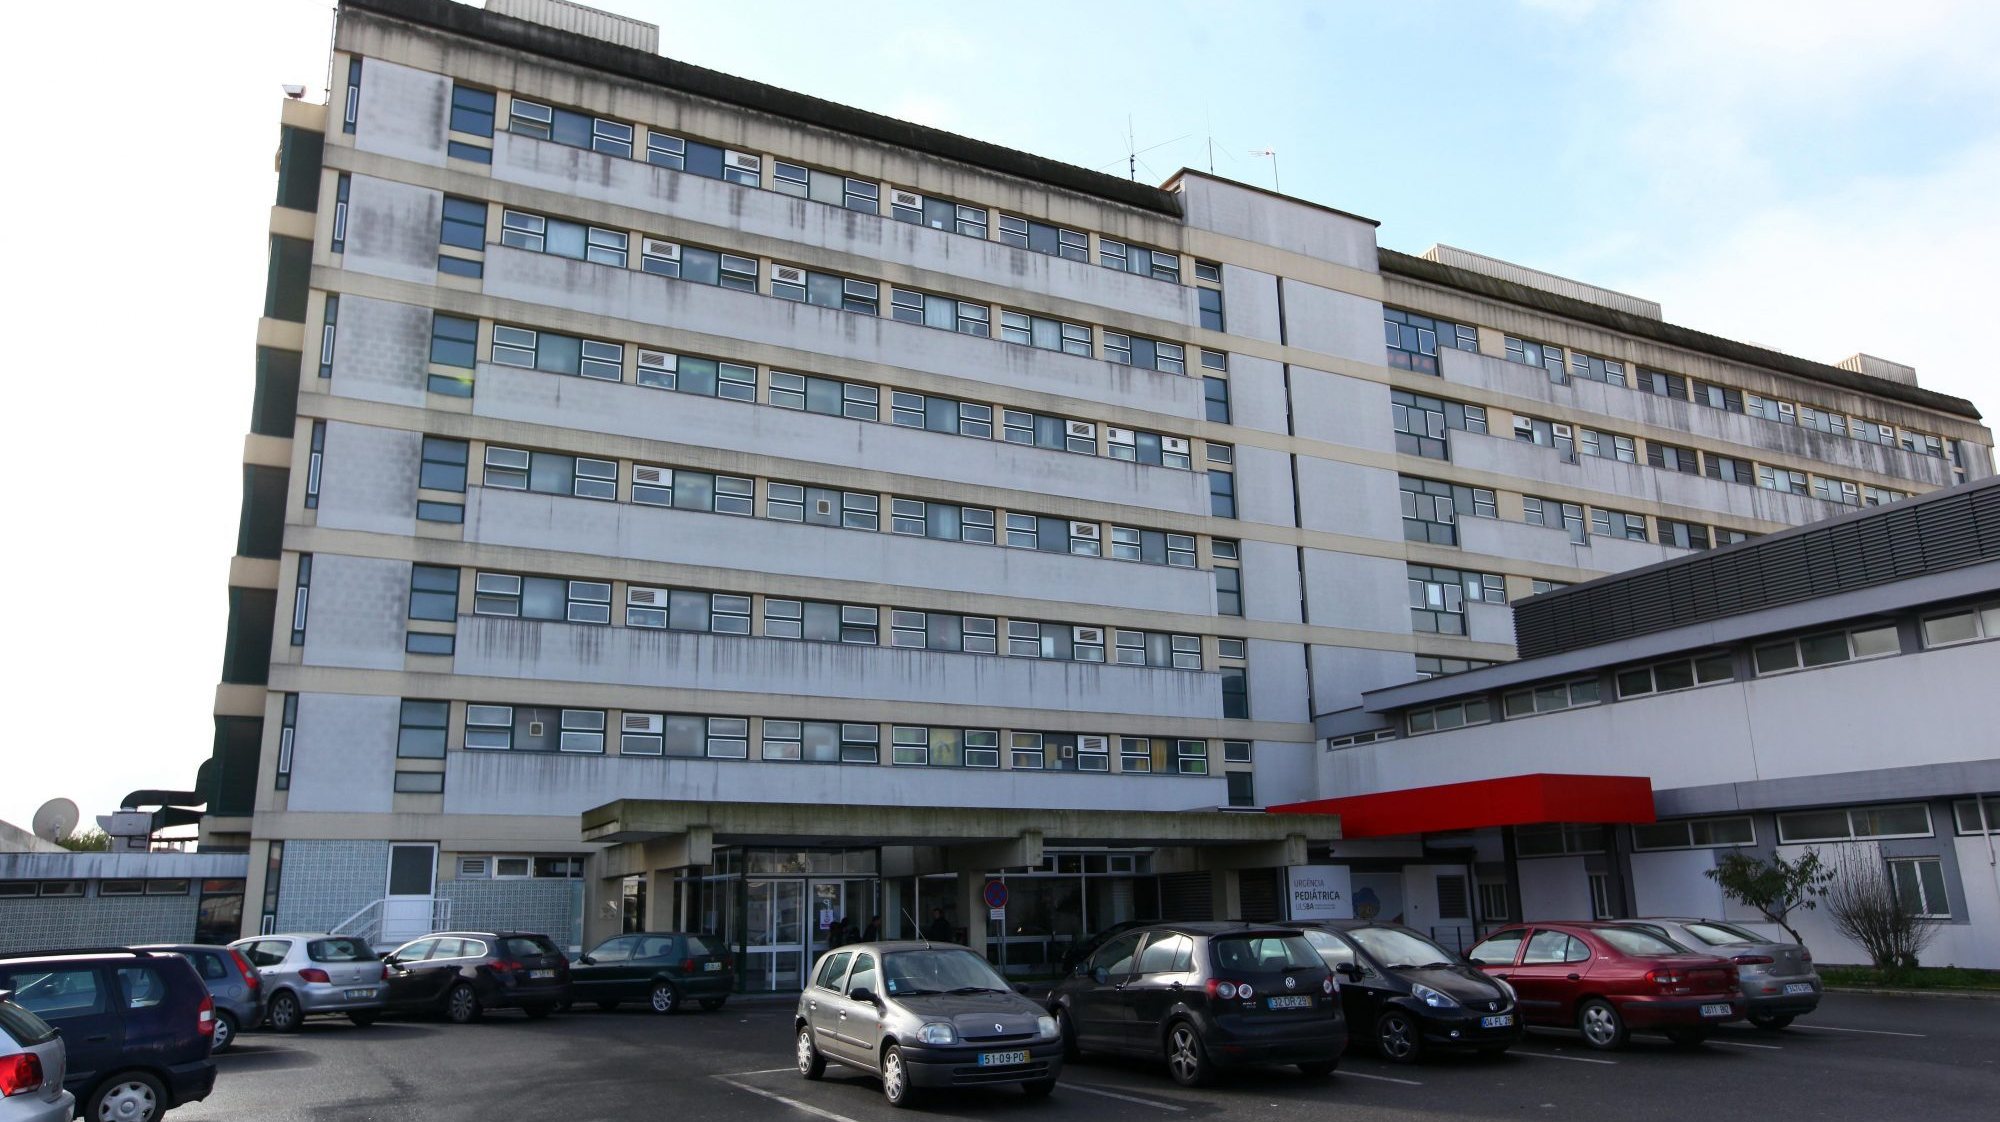 O hospital de Beja